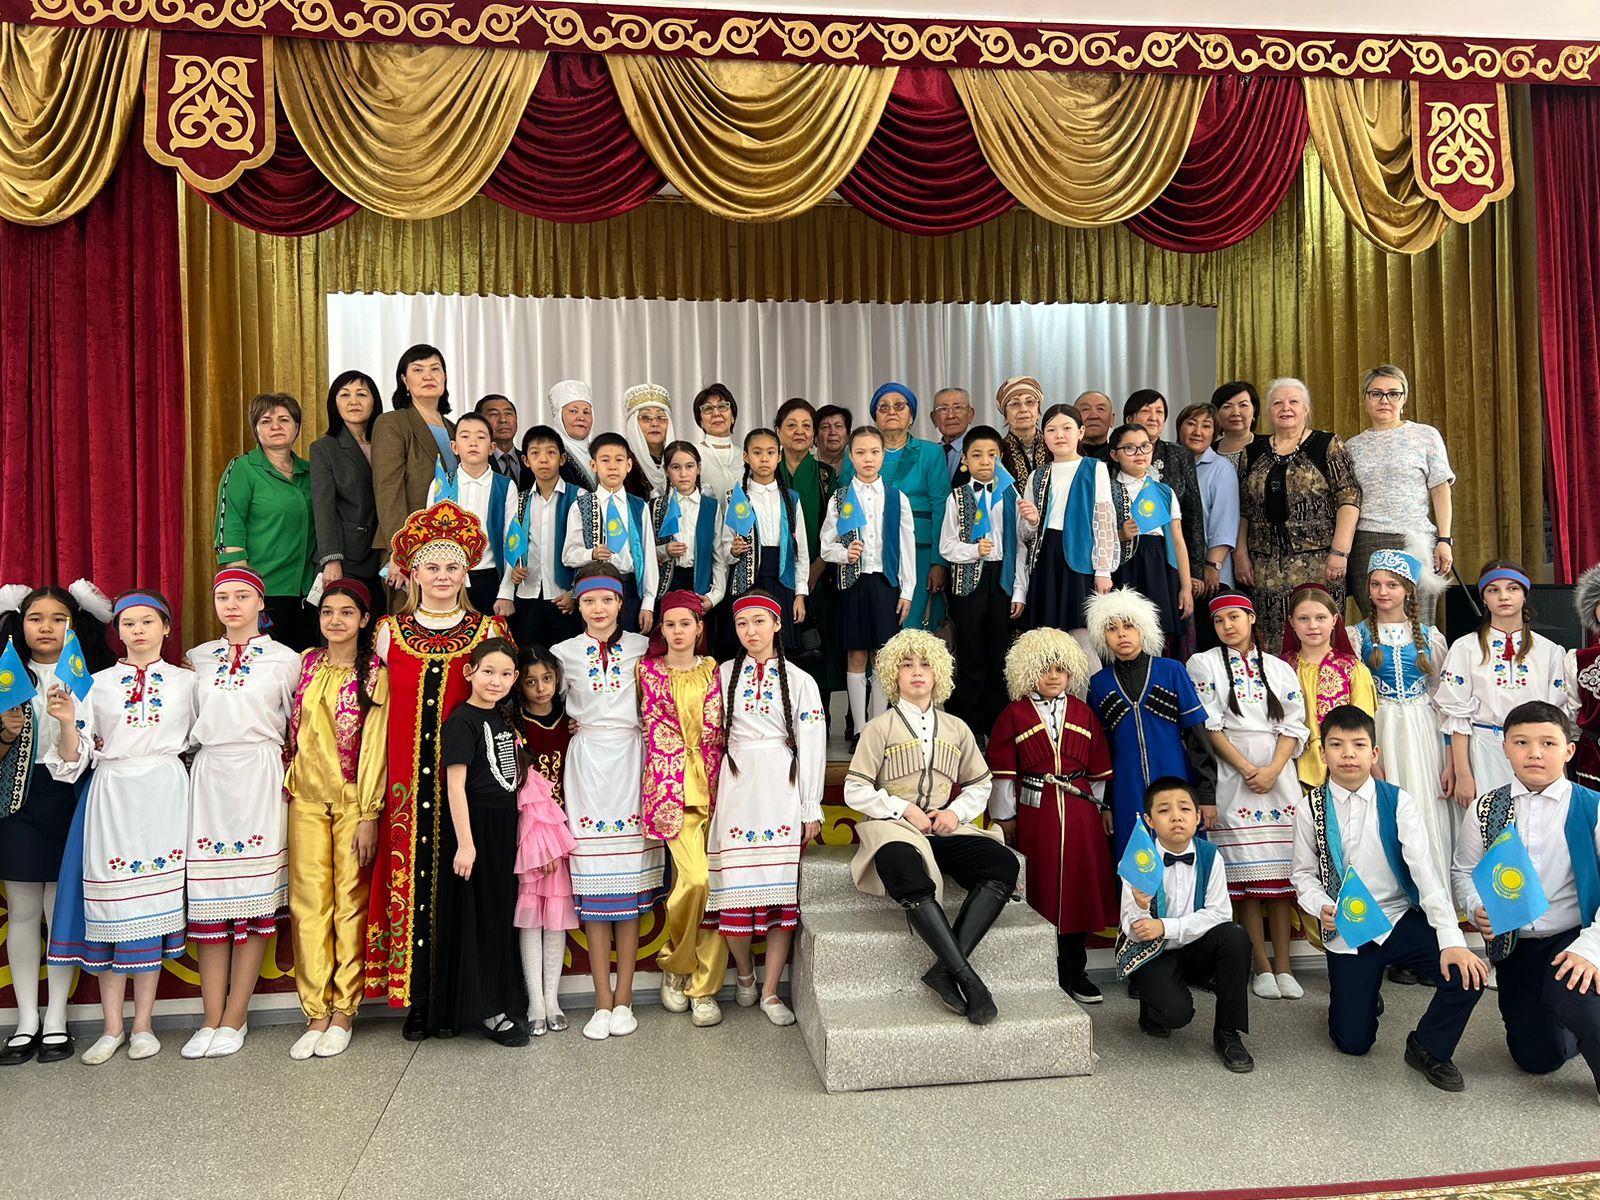 1 мая- День единства народа Казахстана